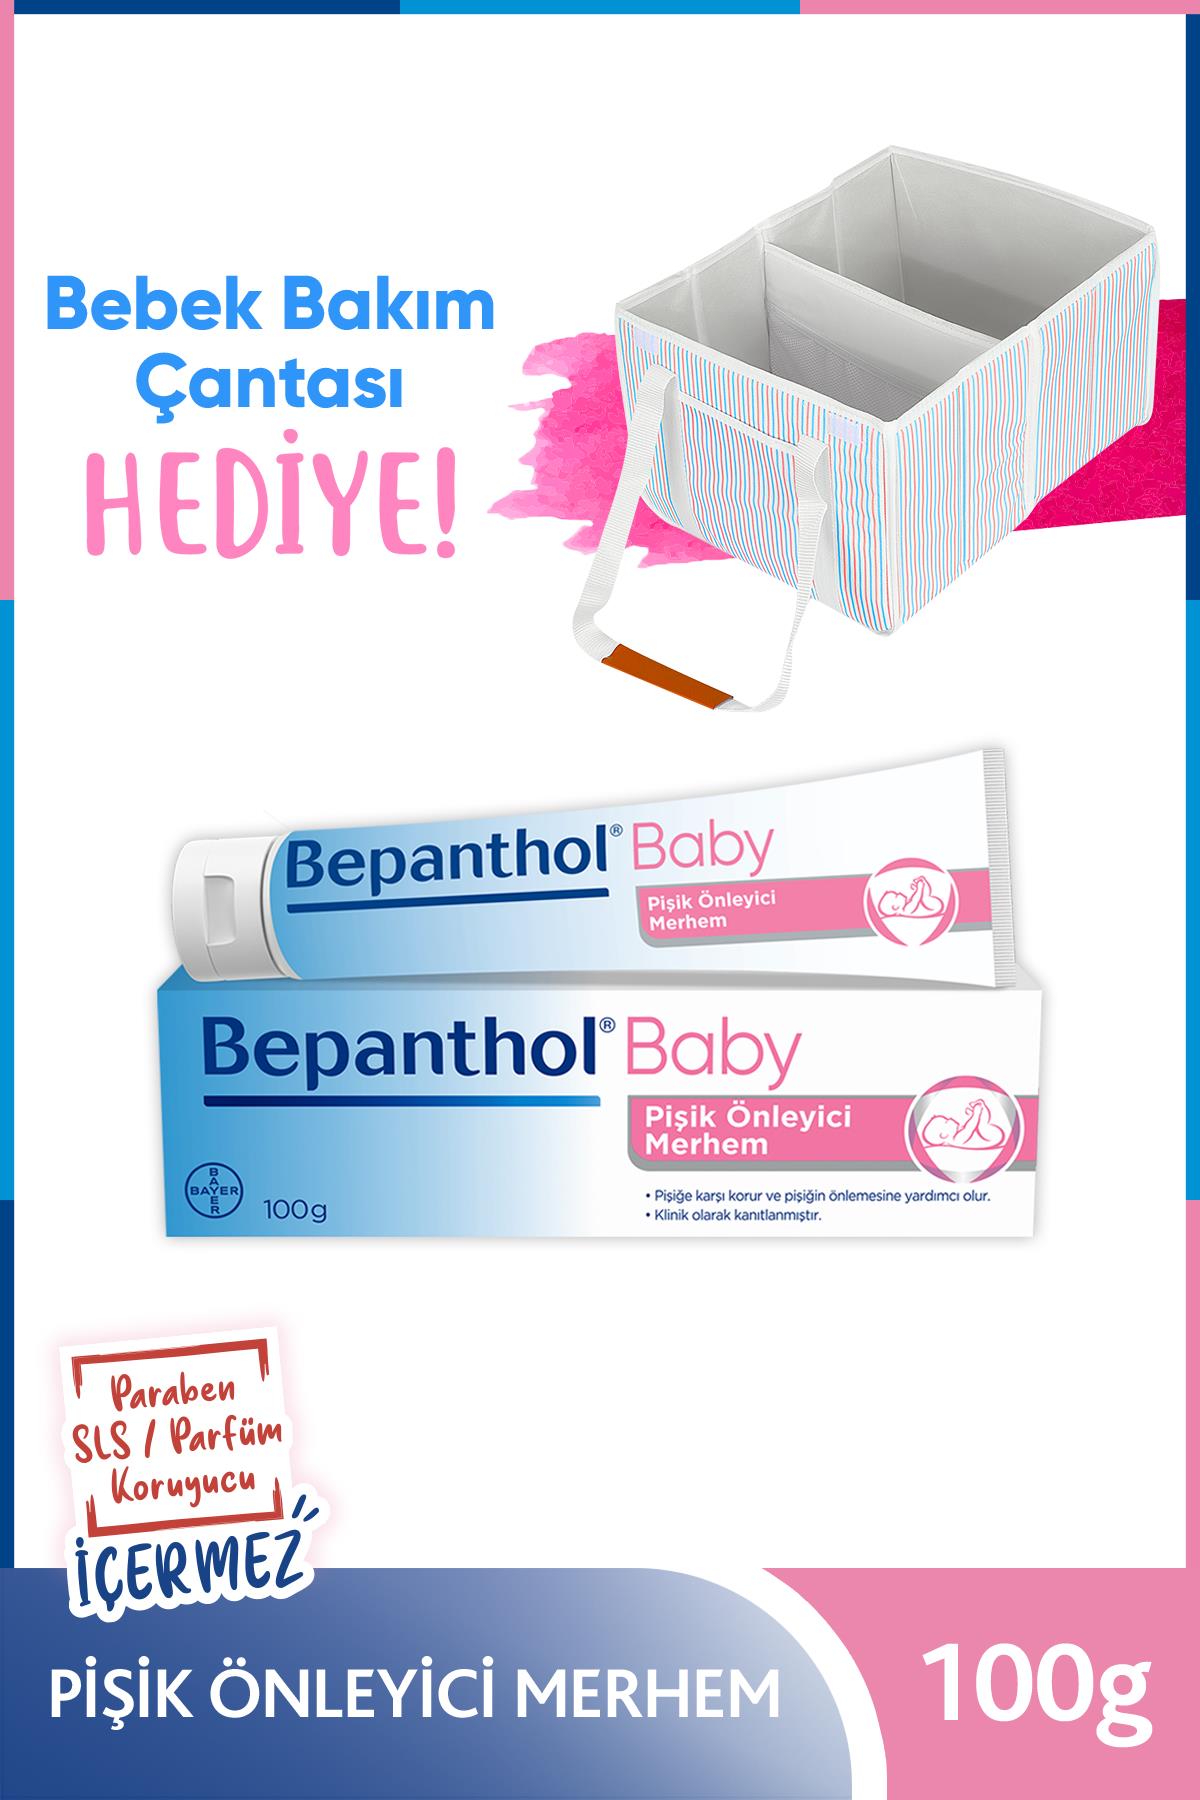 Bepanthol baby pişik önleyici merhem 100g + Bebek Bakım Çantası H